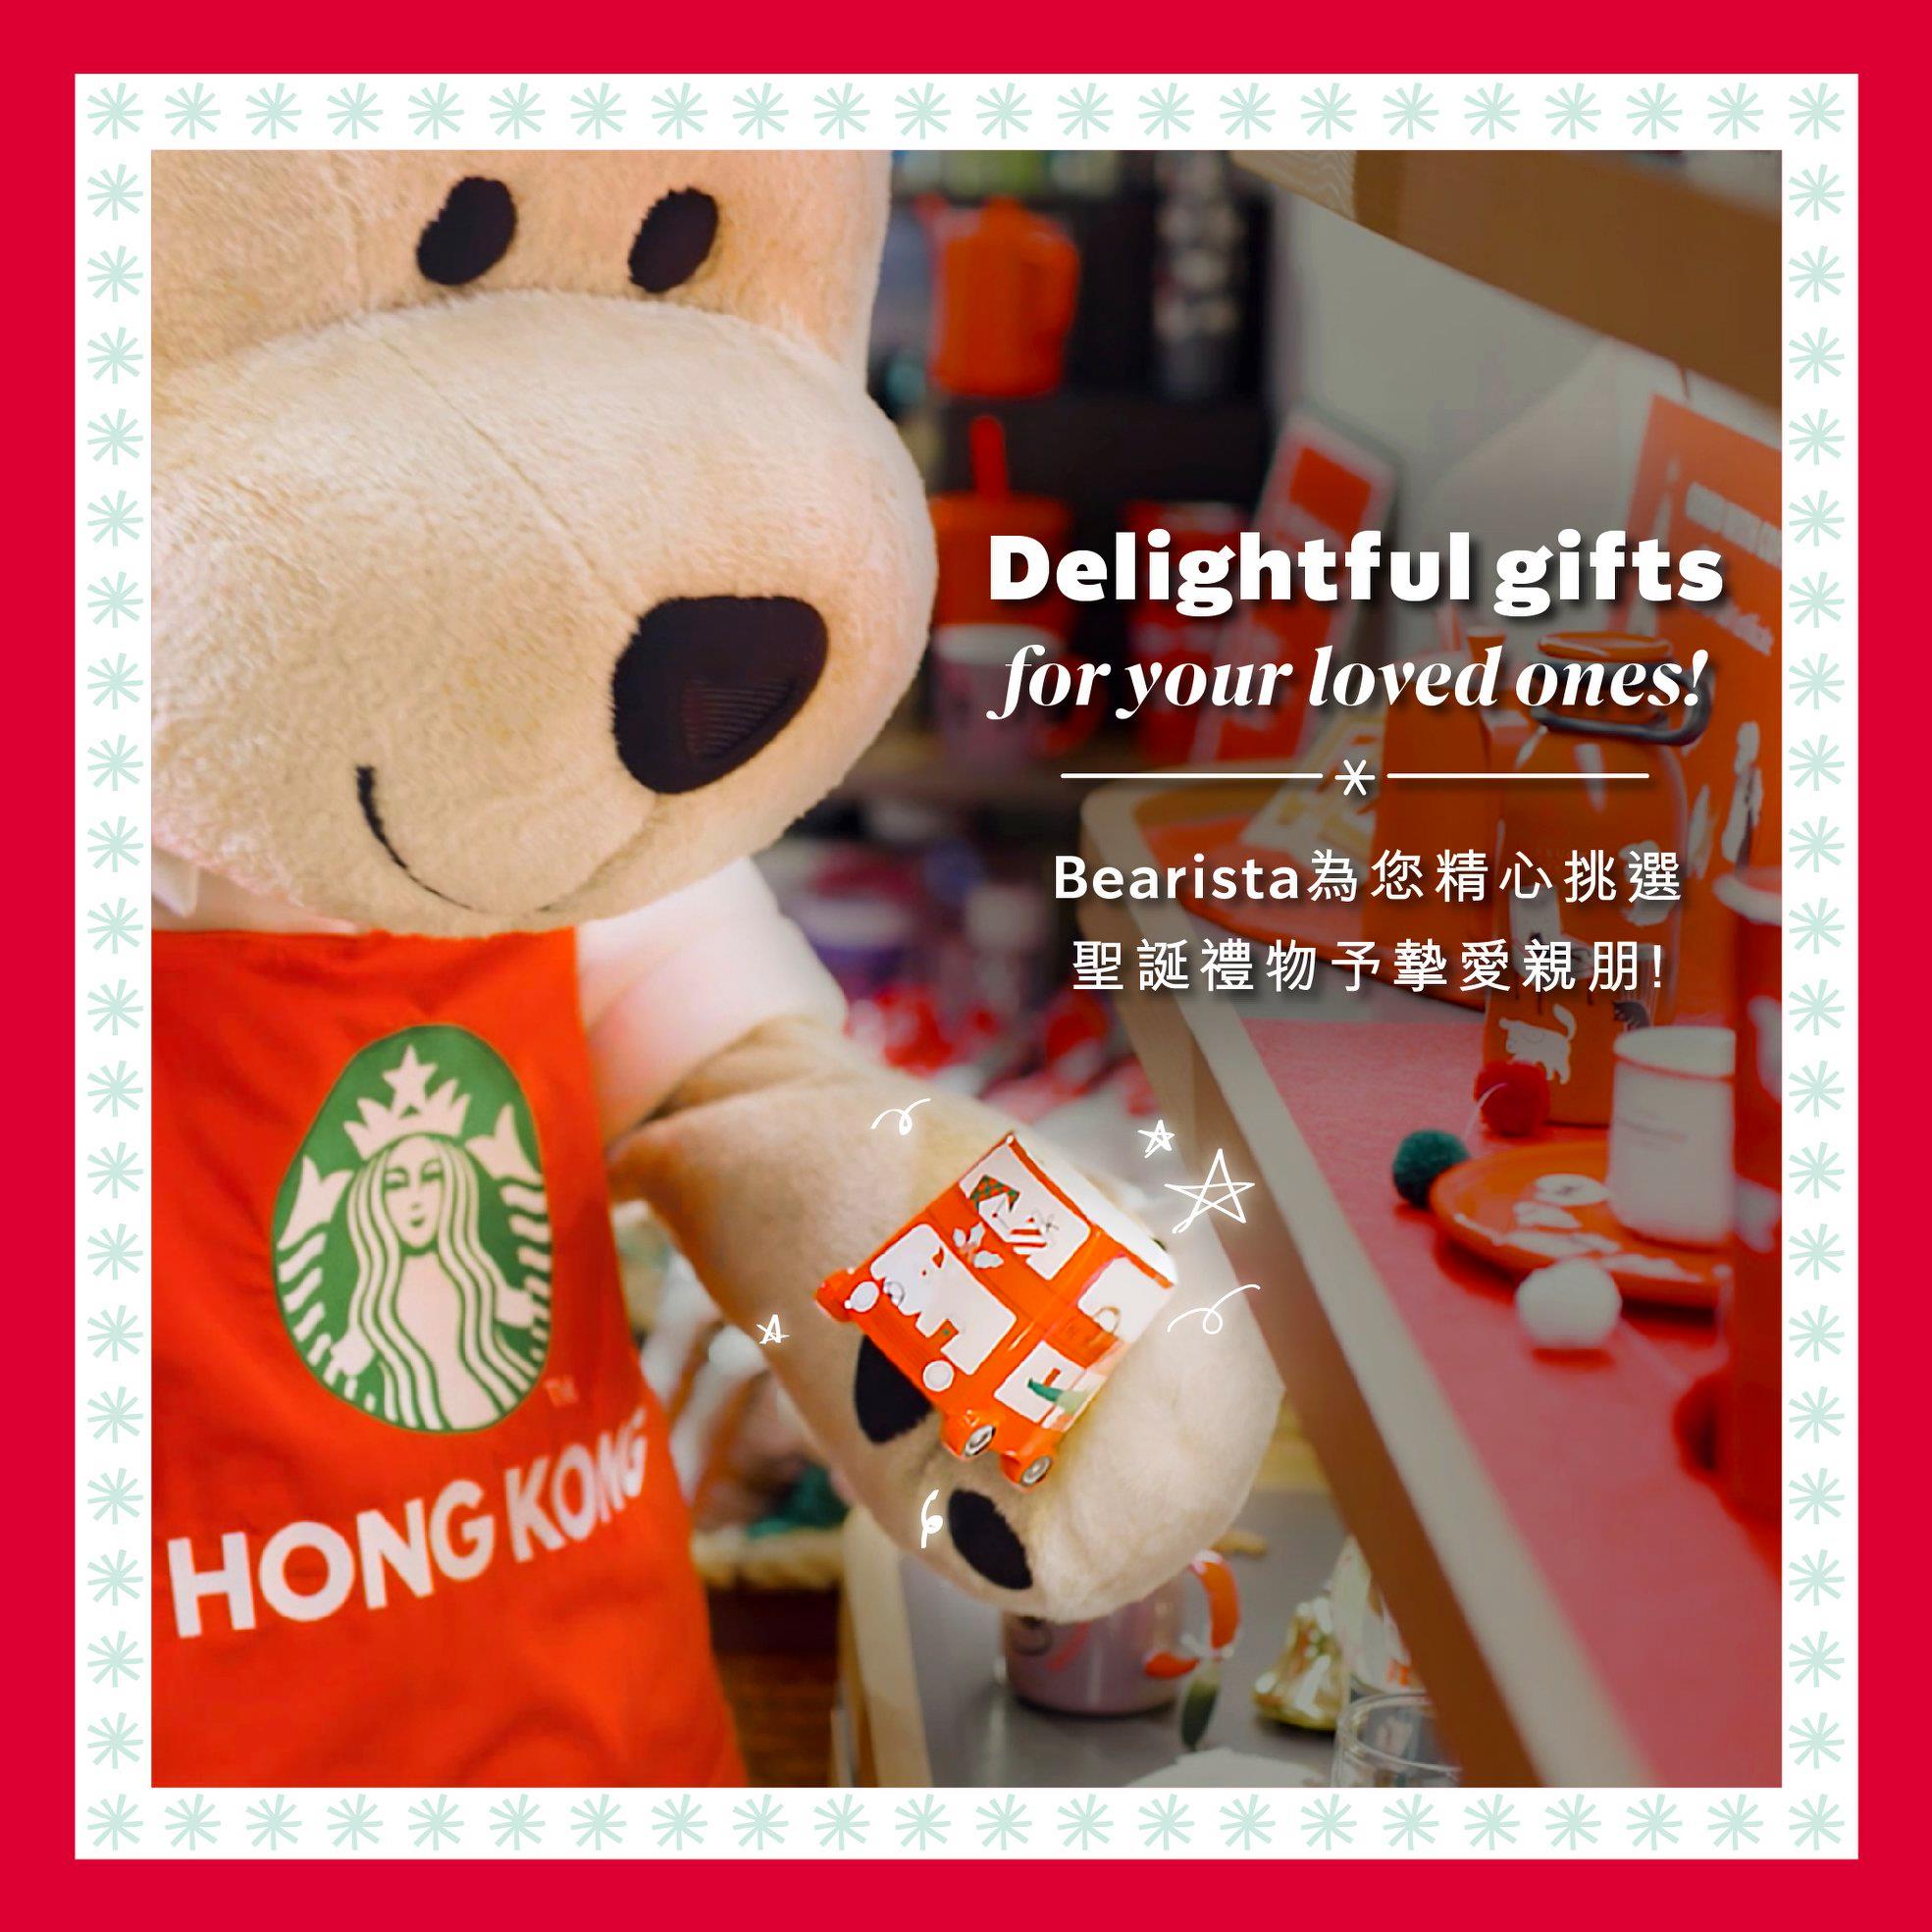 聖誕踏入倒數階段，您是否還在心思思該送什麼禮物？星巴克熊為您精心挑選多款禮物送予親朋好友。各款實用、造型可愛的商品等您帶走！ #香港星巴克